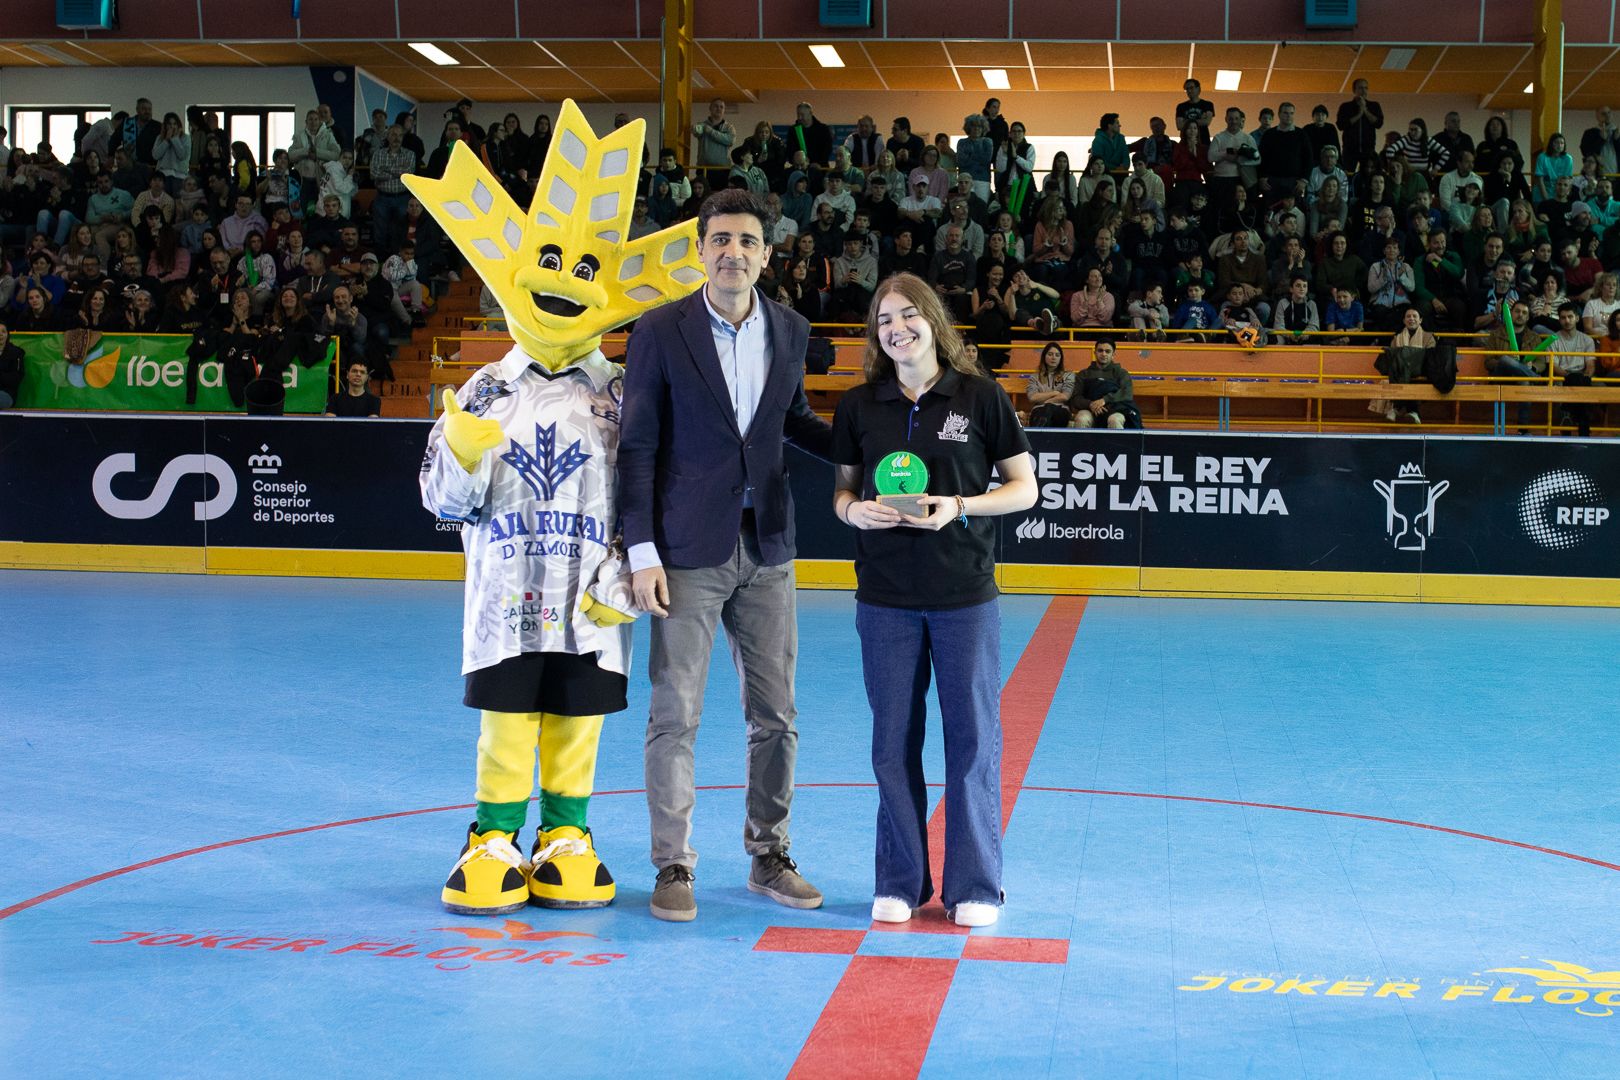 GALERIA | Ya hay campeones de la Copa del Rey y de la Reina de Hockey coronados en Zamora